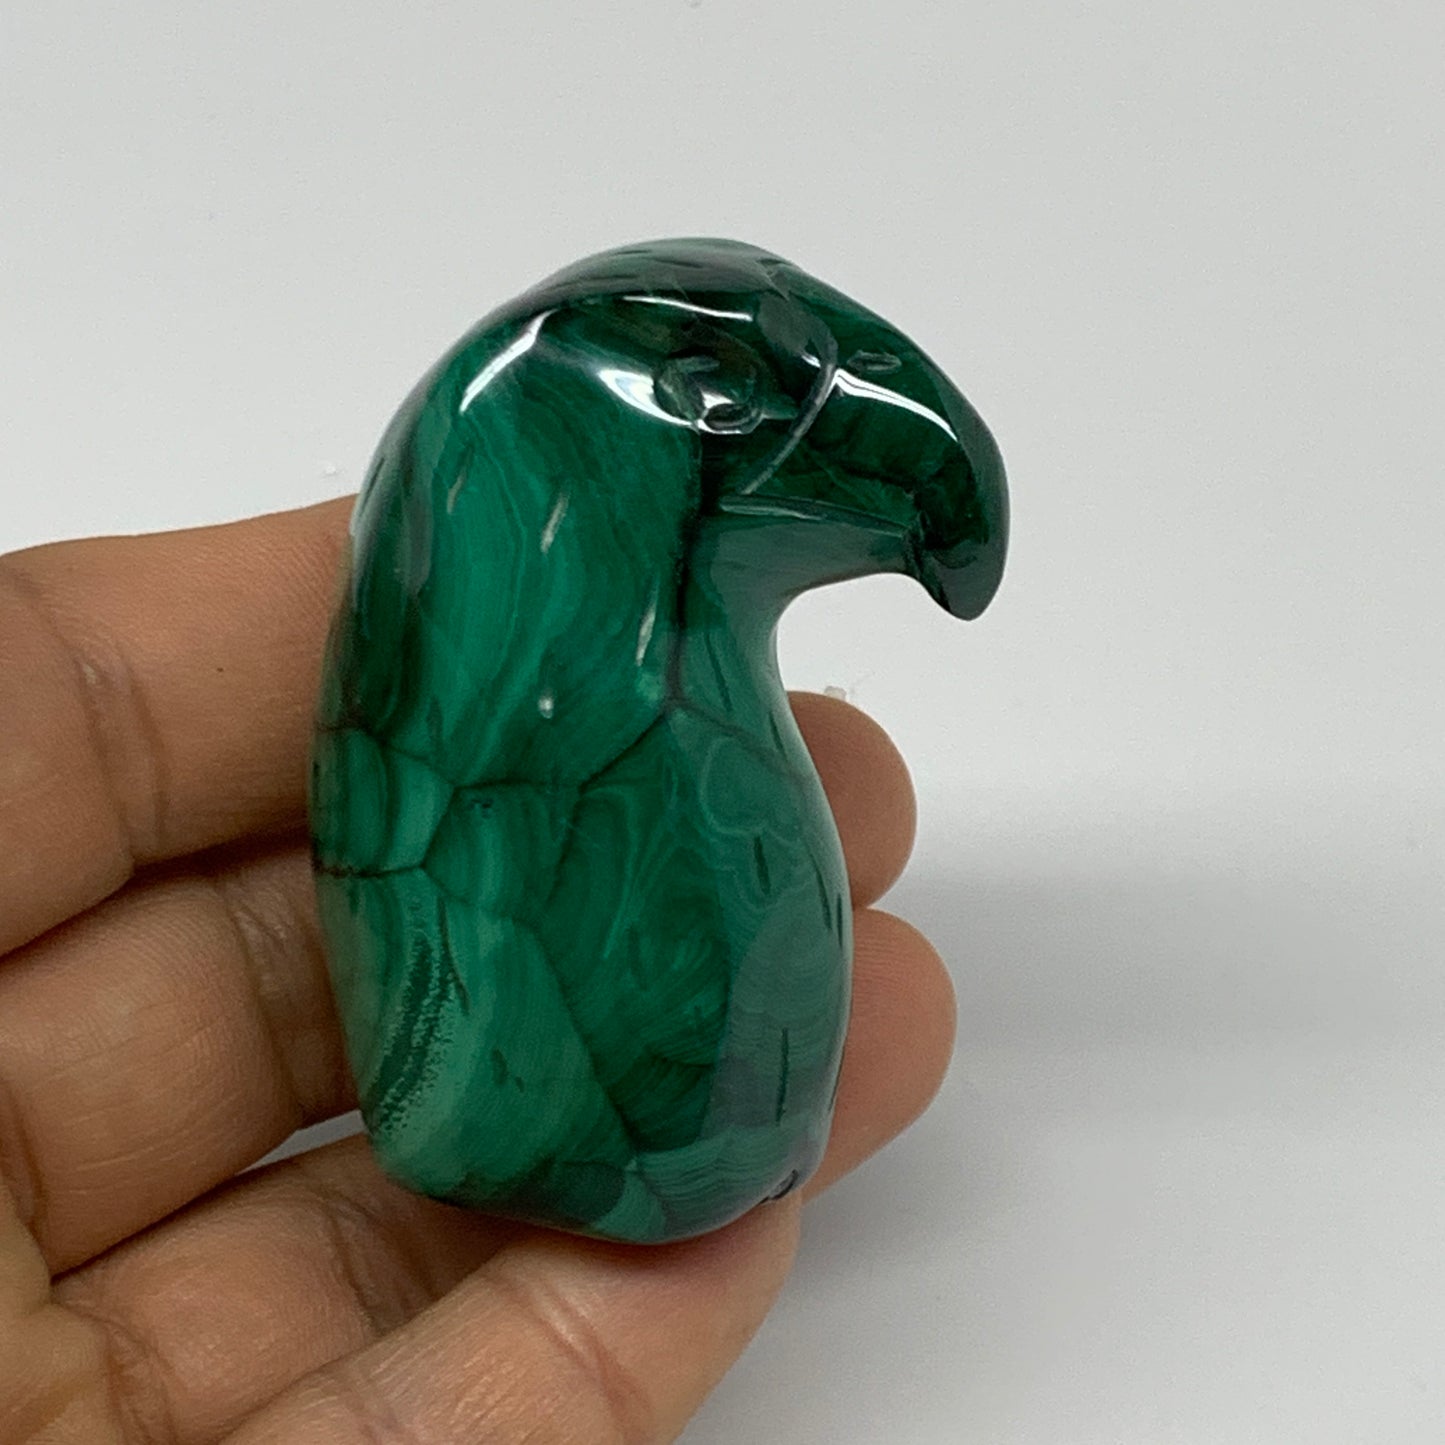 107.4g, 2.1"x1.1"x1" Natural Solid Malachite Eagle/Falcon Figurine @Congo, B3273